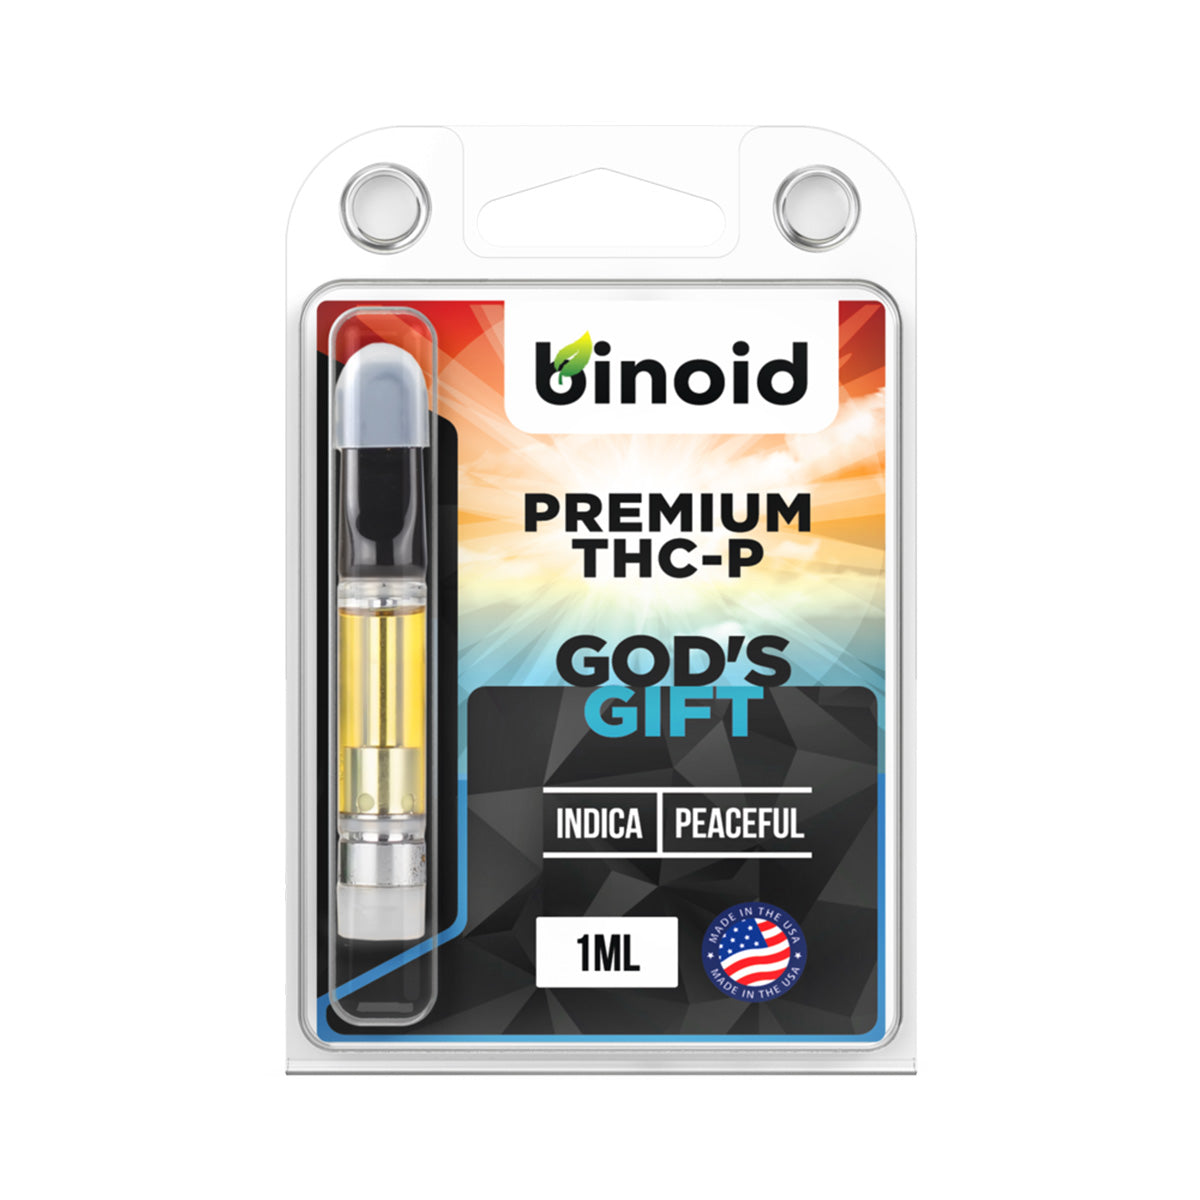 Binoid THC-P Gods Gift 1ML